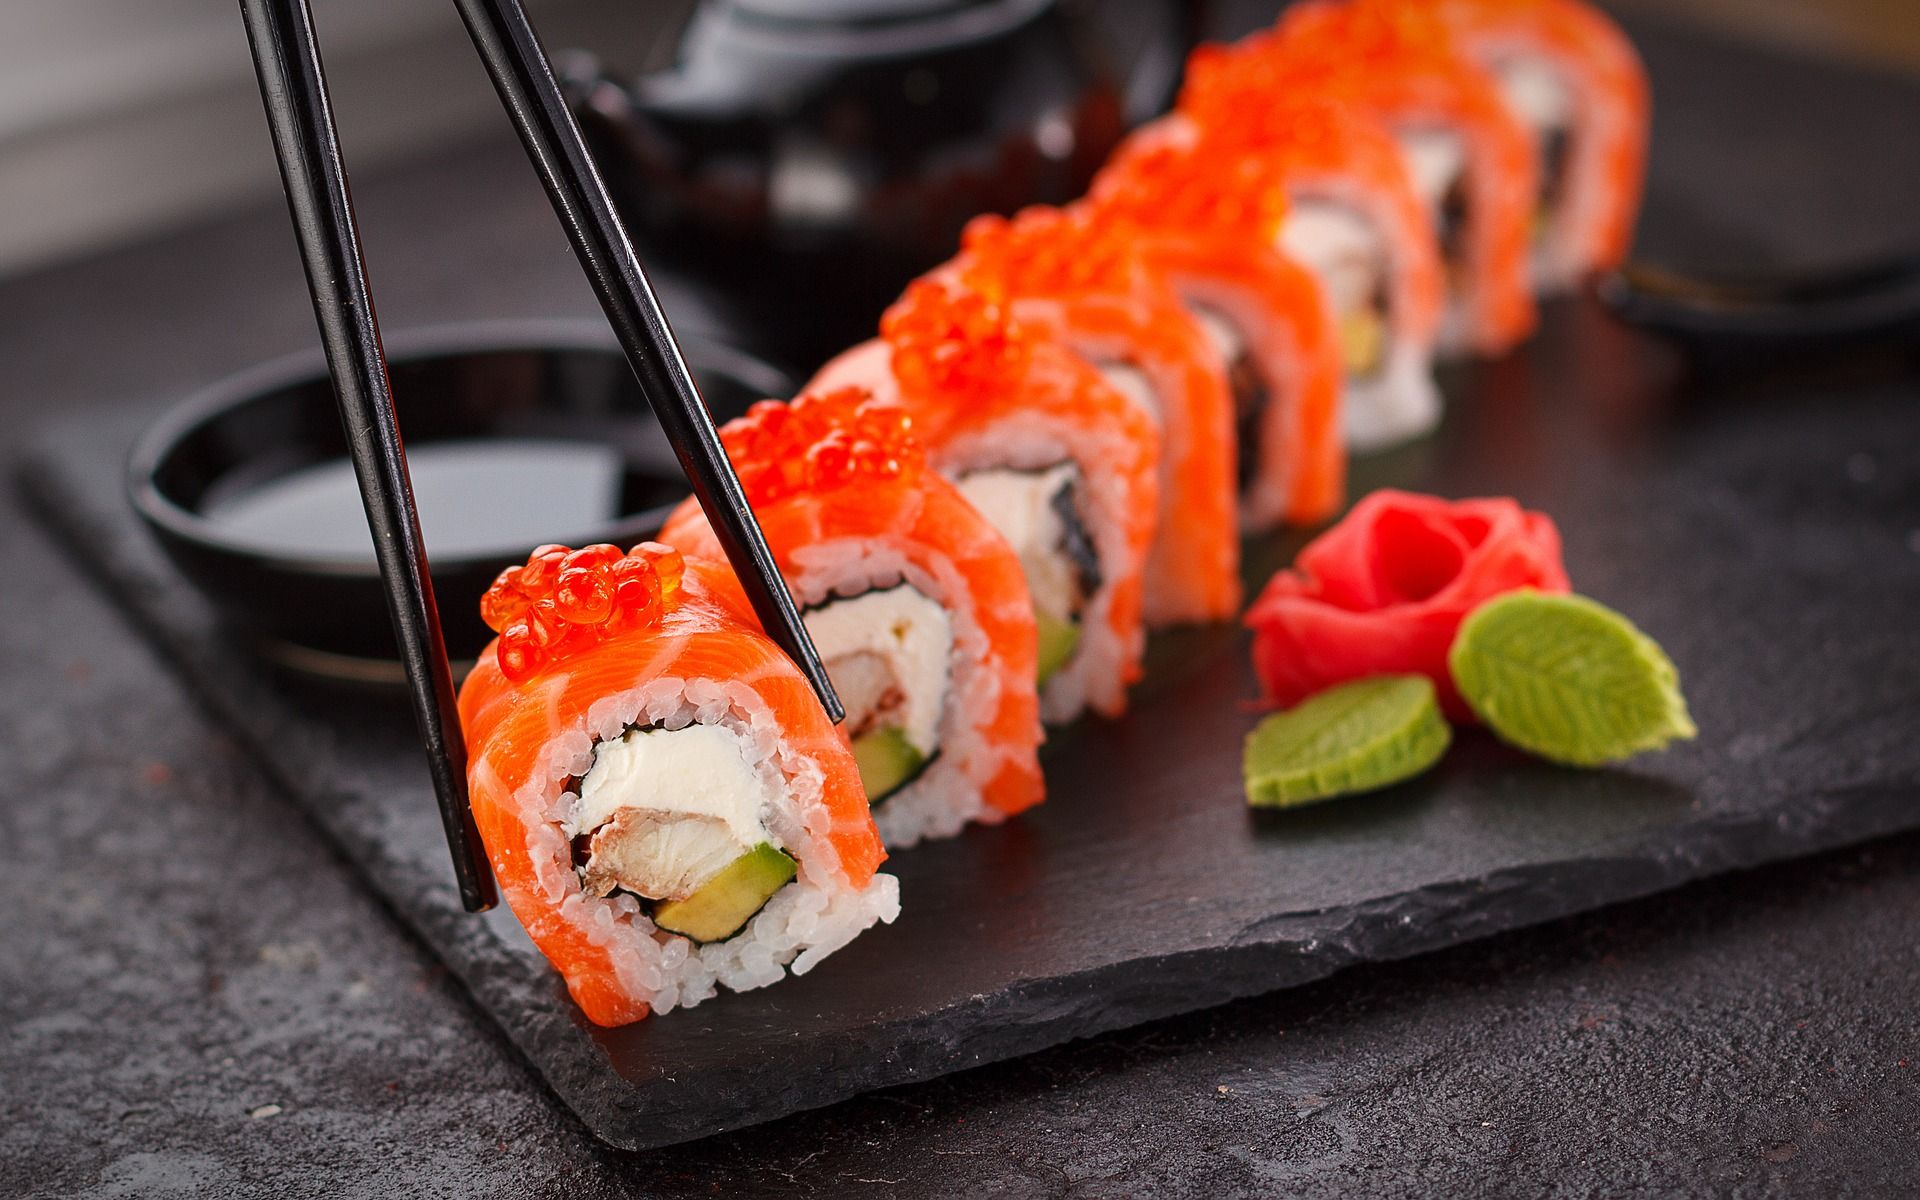 Kuliner sushi adalah salah satu dari beragam menu enak yang bisa Anda dapatkan dengan harga menarik selama Oktober 2021 di Surabaya./